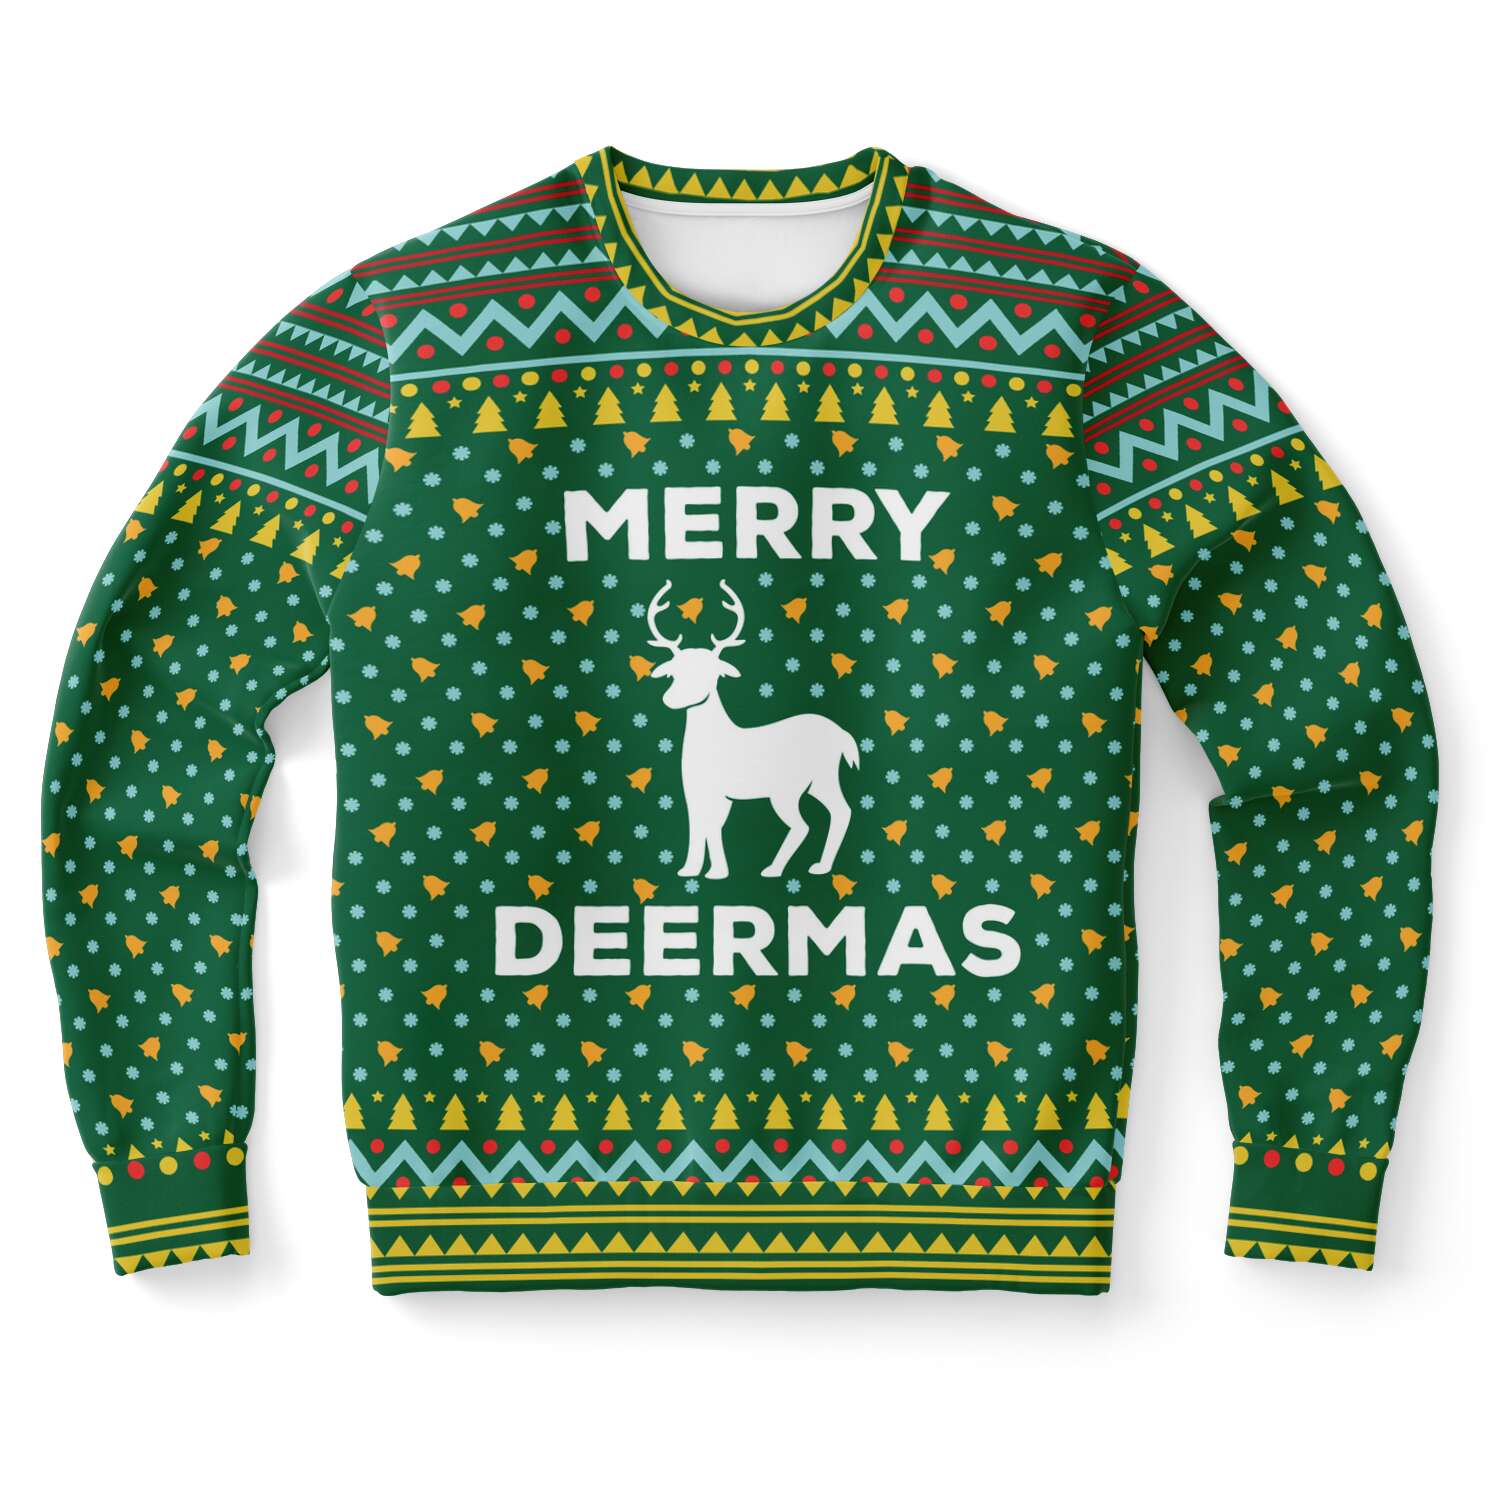 Very Deermas Sweatshirt